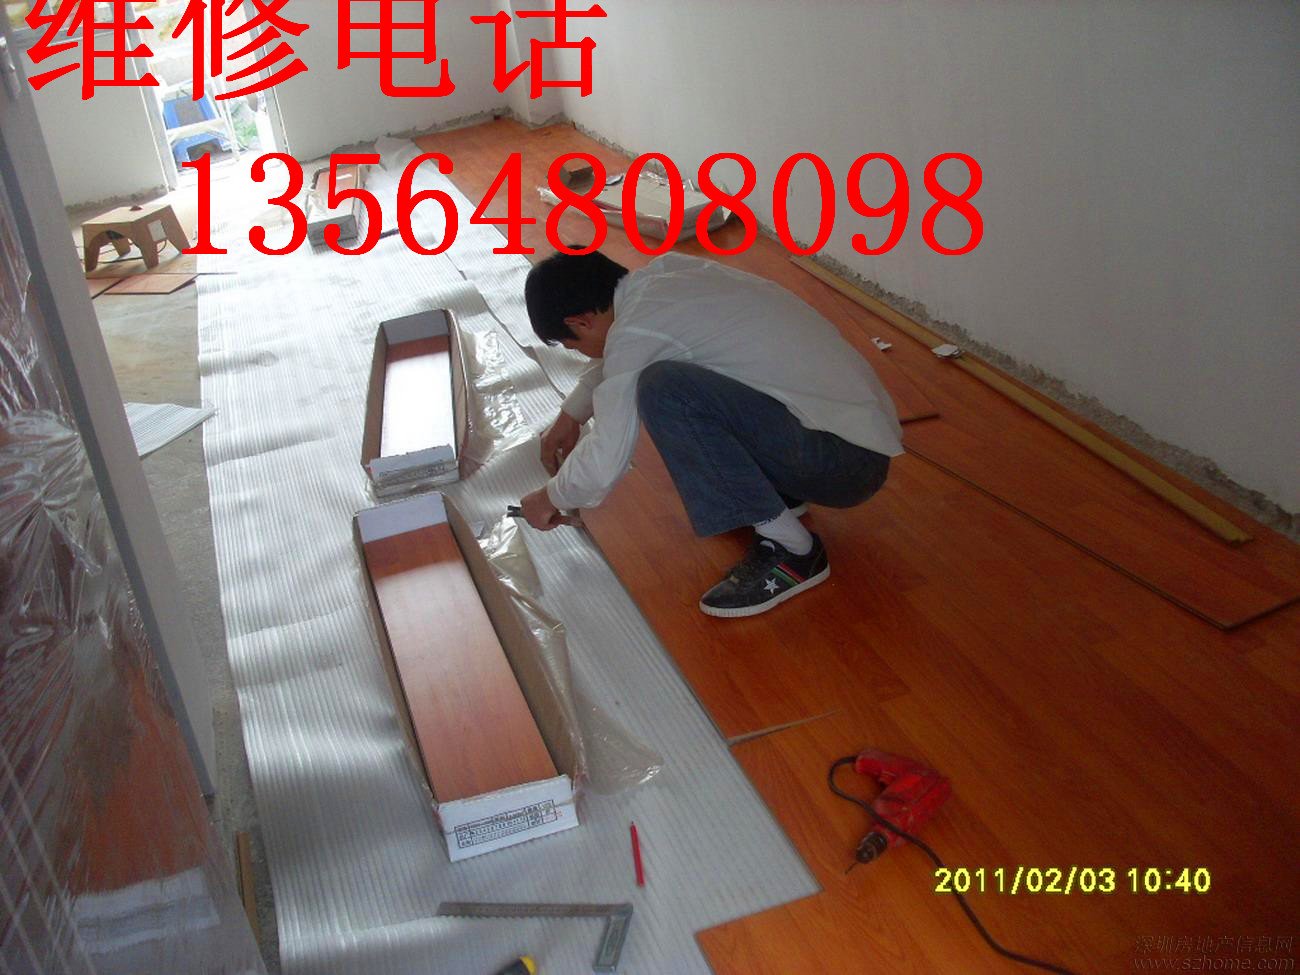 上海复合地板安装实木地板变形修理供应用于地板维修的上海复合地板安装实木地板变形修理 旧实木地板打磨 油漆翻新